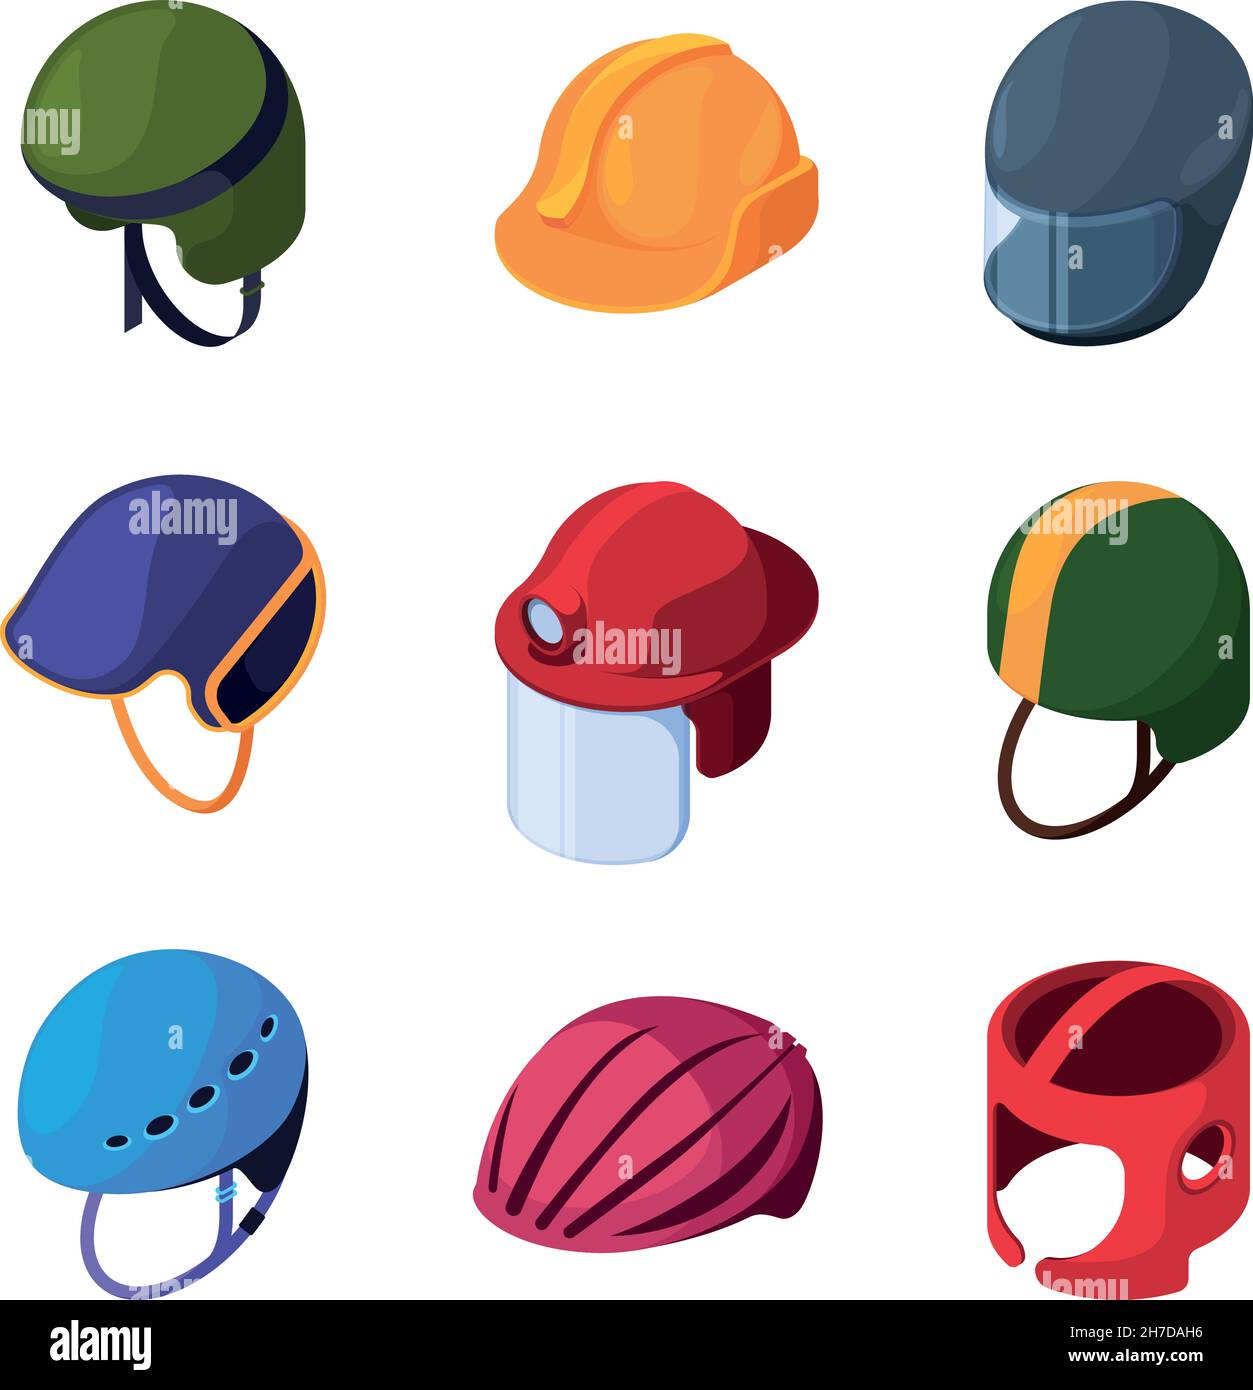 Casques de protection.Moto plongée travailleurs casquettes de sécurité astronautes casques colorés professionnels chapeaux garish vecteur isométriques images ensemble Illustration de Vecteur